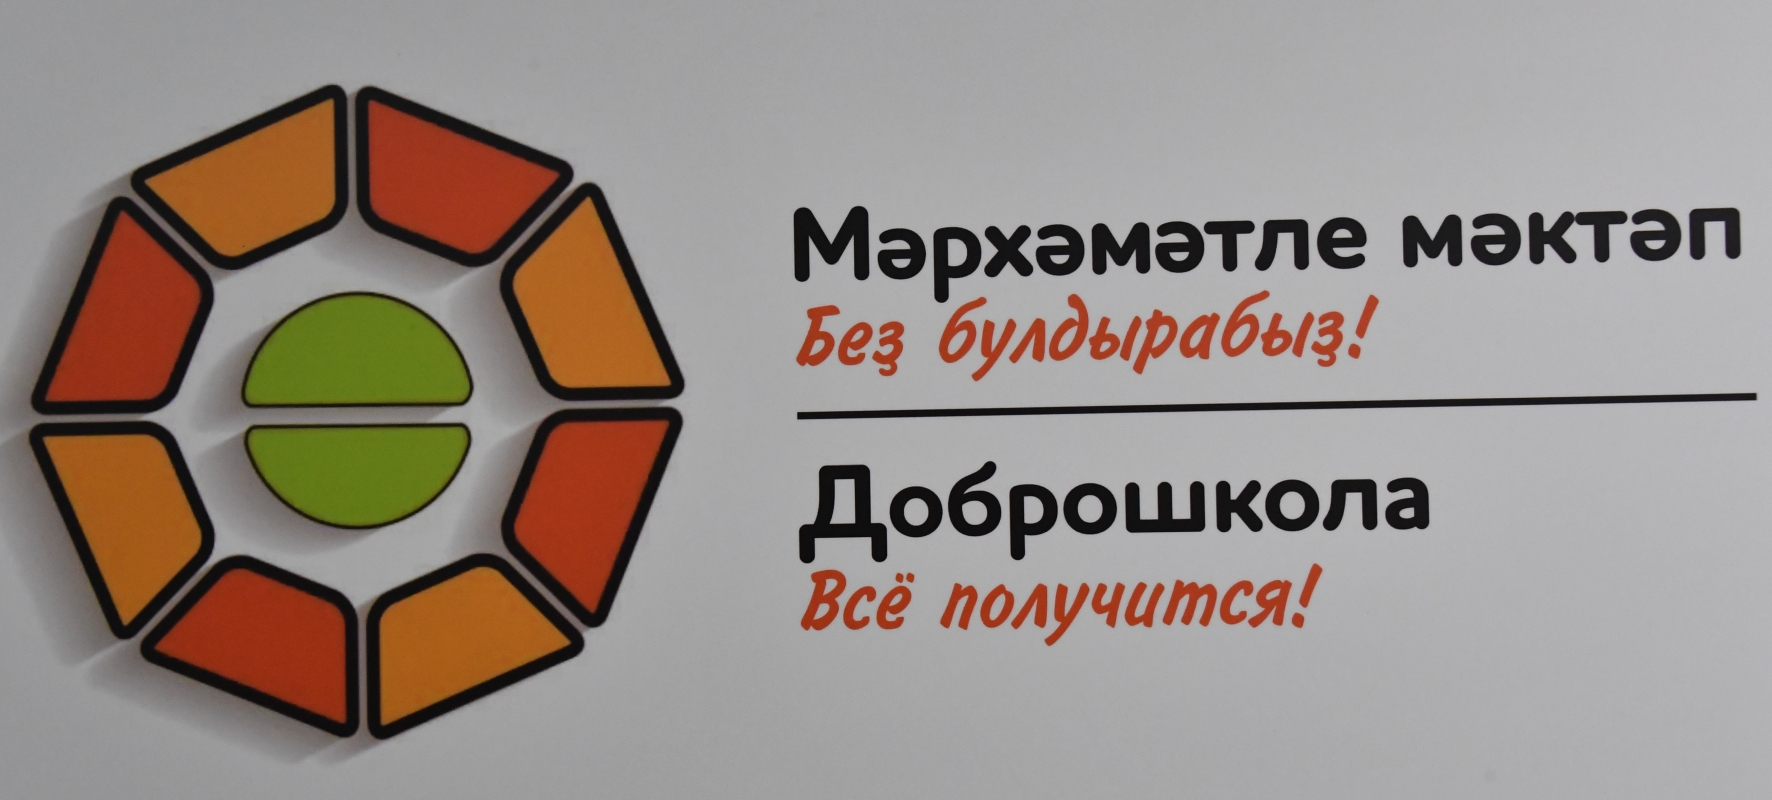    Компания Медиа РБ Инжиниринг приняла участие в торжественном открытии "Доброшколы" .